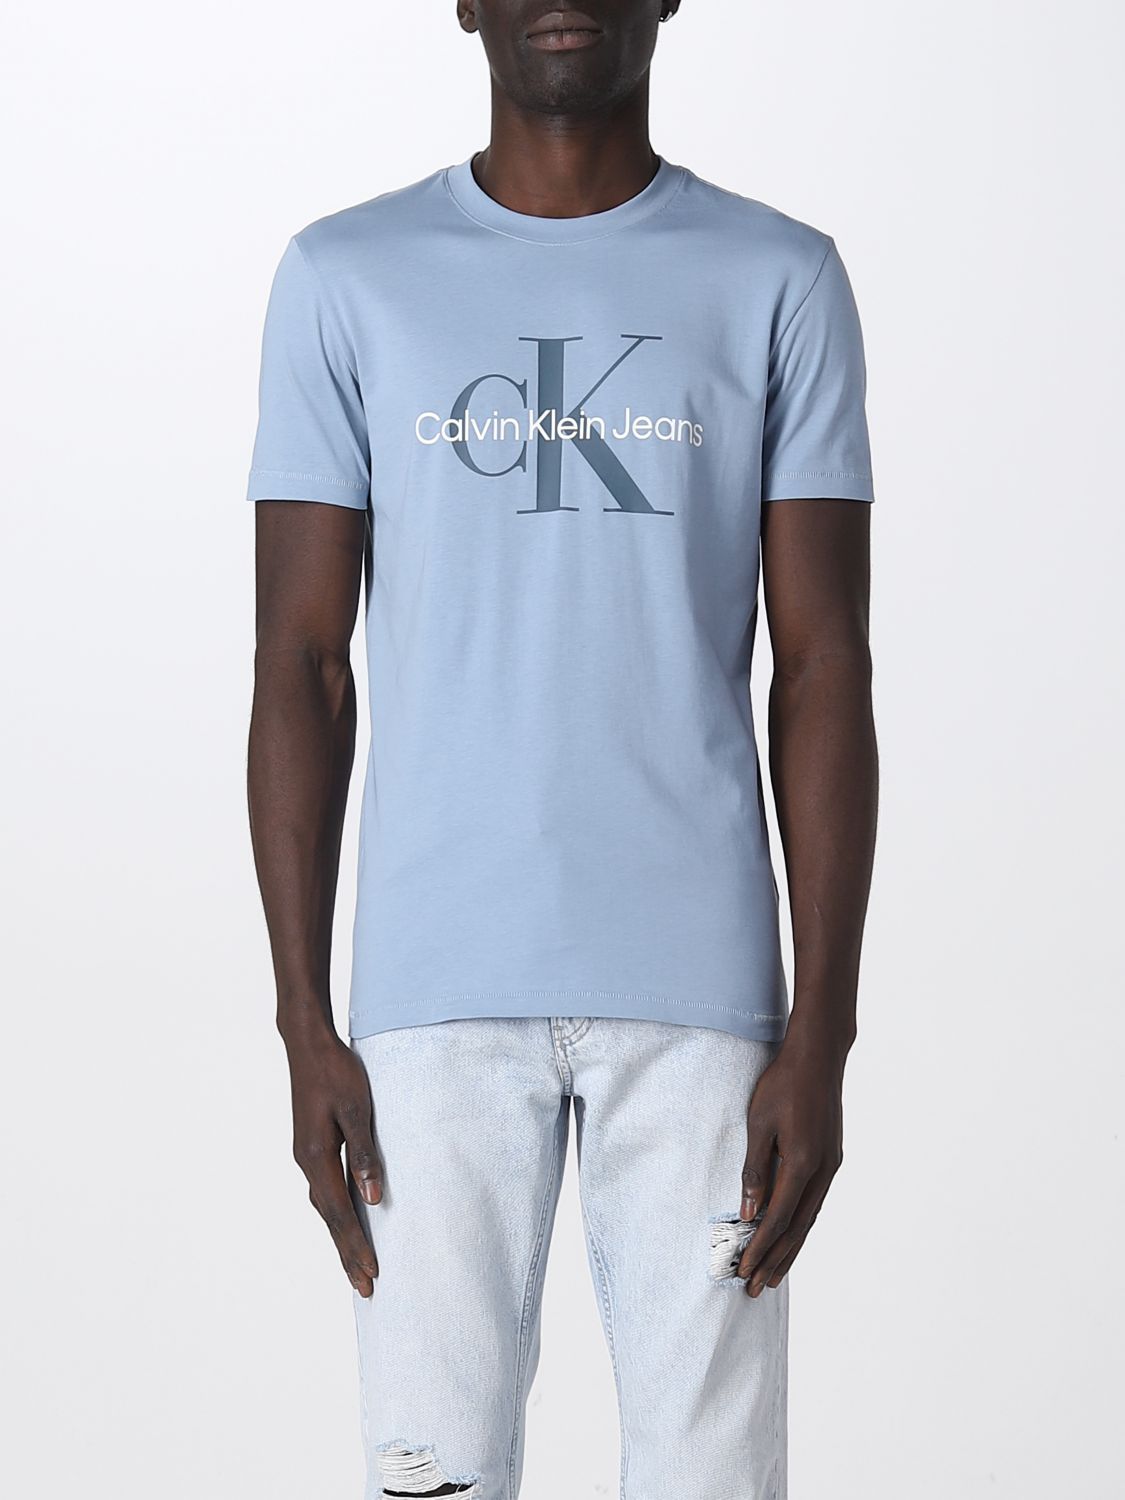 sirene Verschrikking Verfijning CALVIN KLEIN JEANS: t-shirt for man - Blue | Calvin Klein Jeans t-shirt  J30J320806 online on GIGLIO.COM